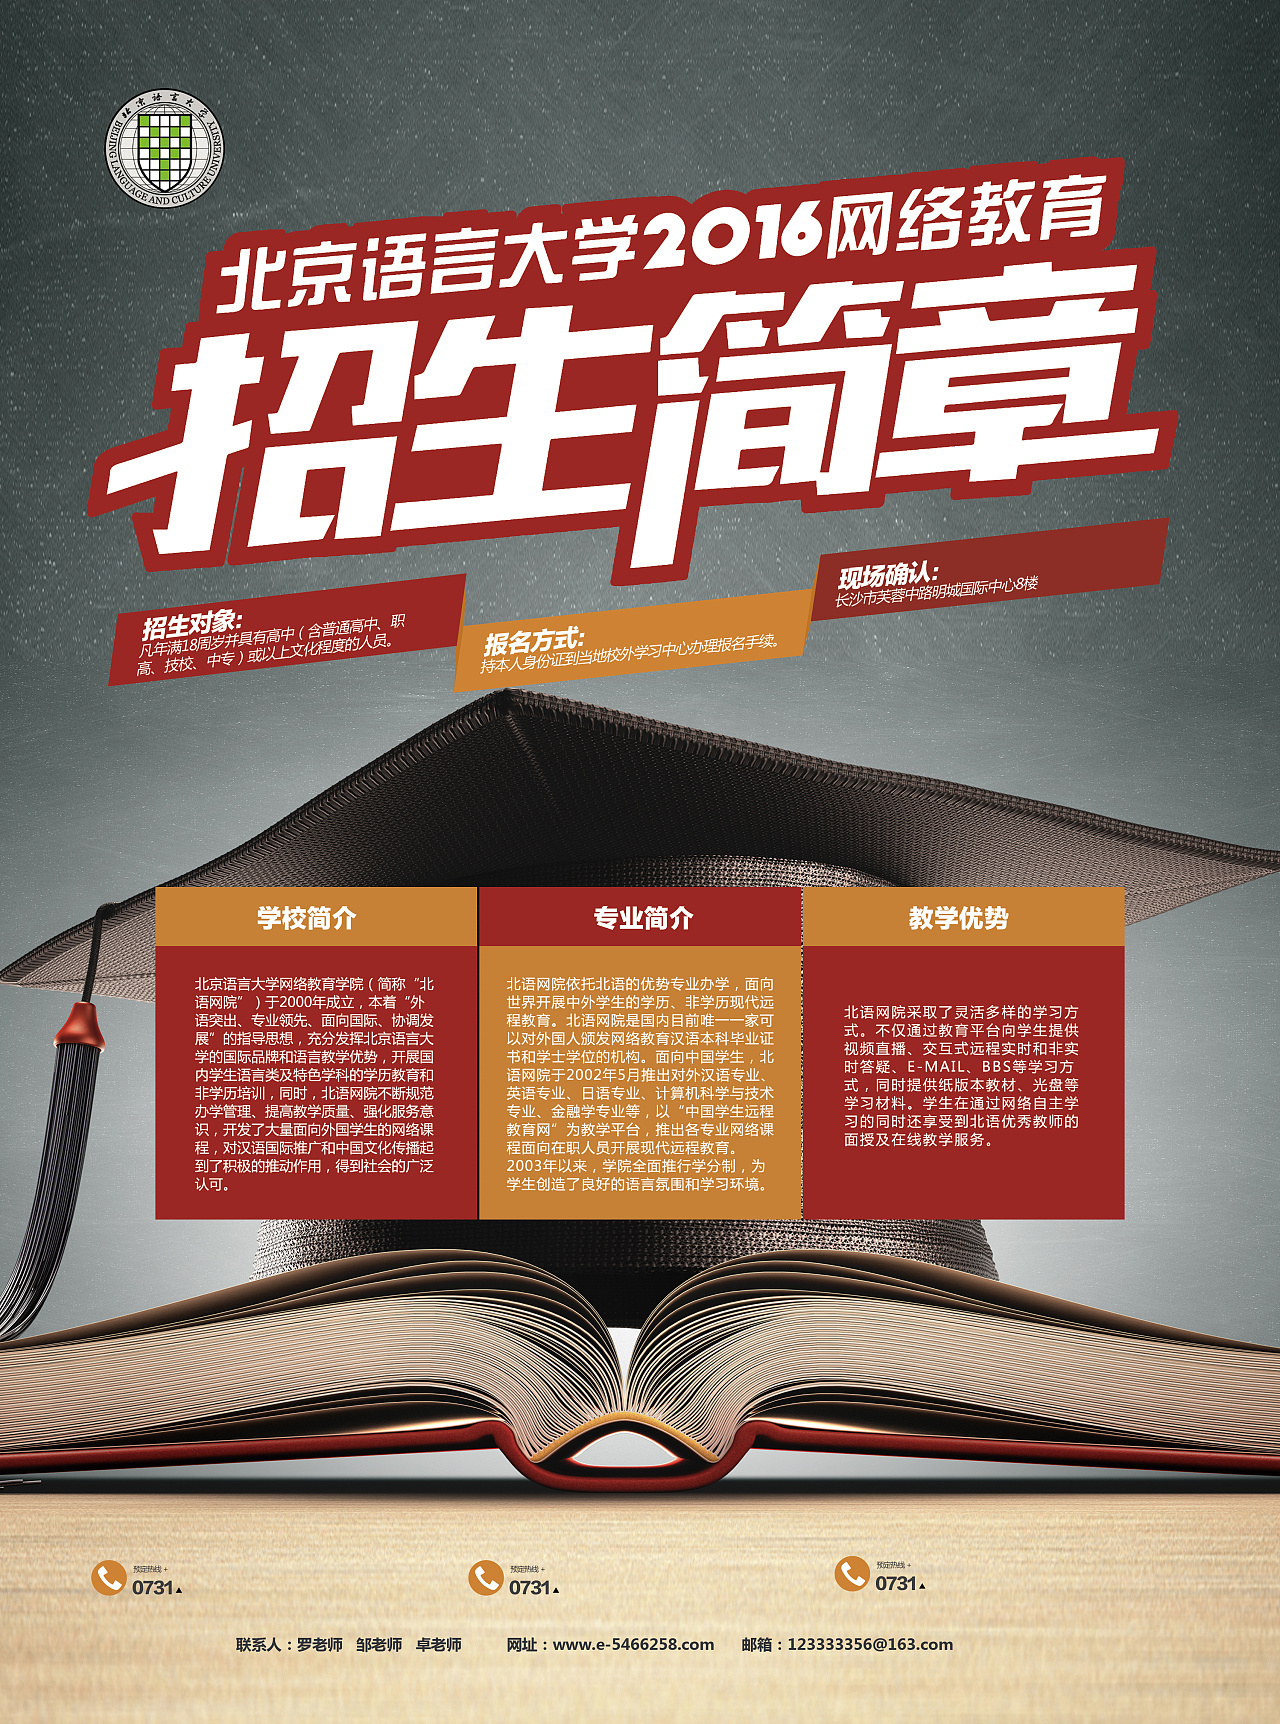 北京语言大学50周年校庆_教育频道微博专题_新浪网